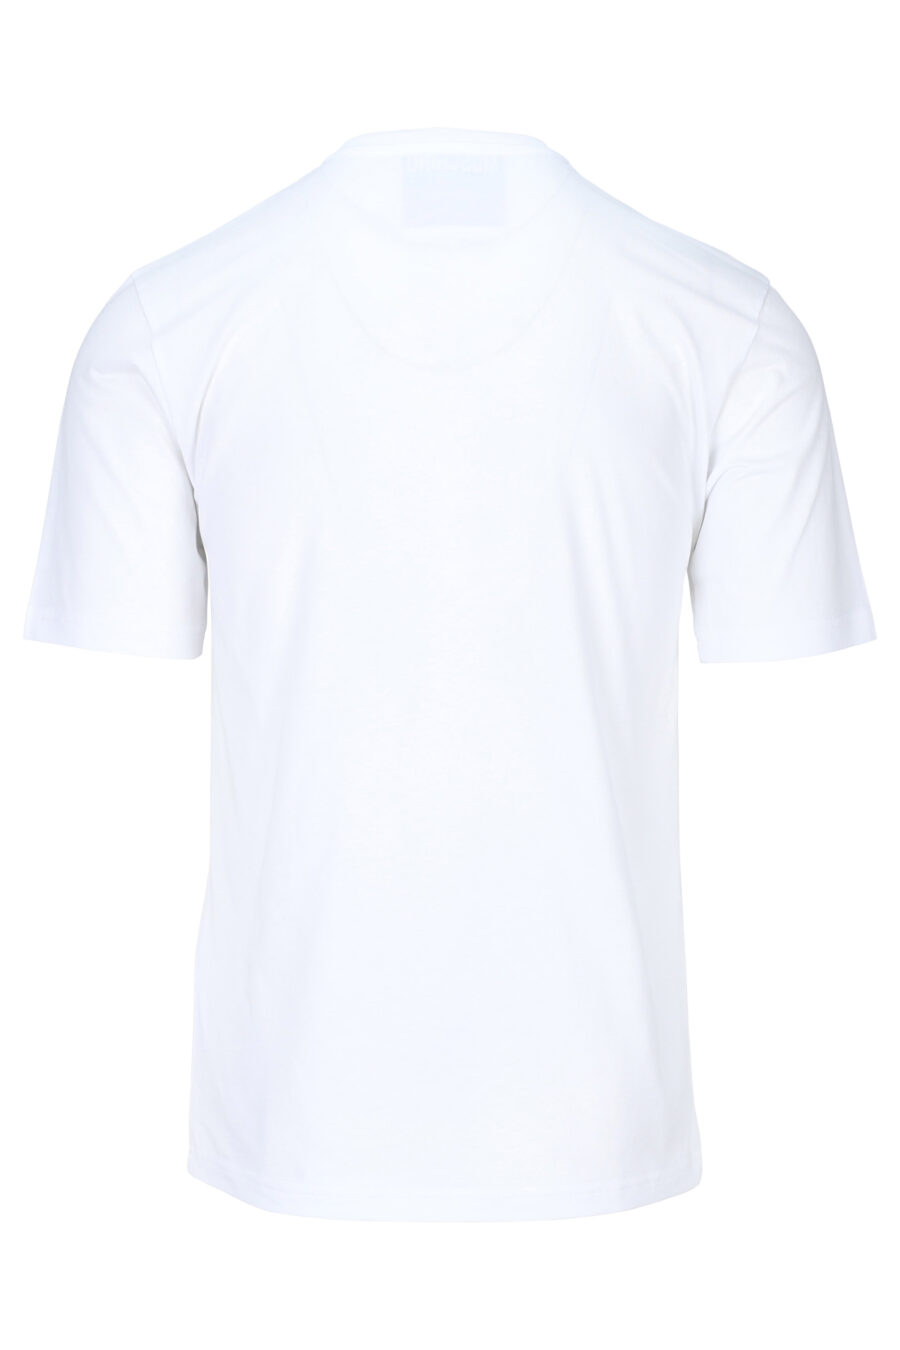 T-shirt branca com maxilogue preto usado - 889316937954 1